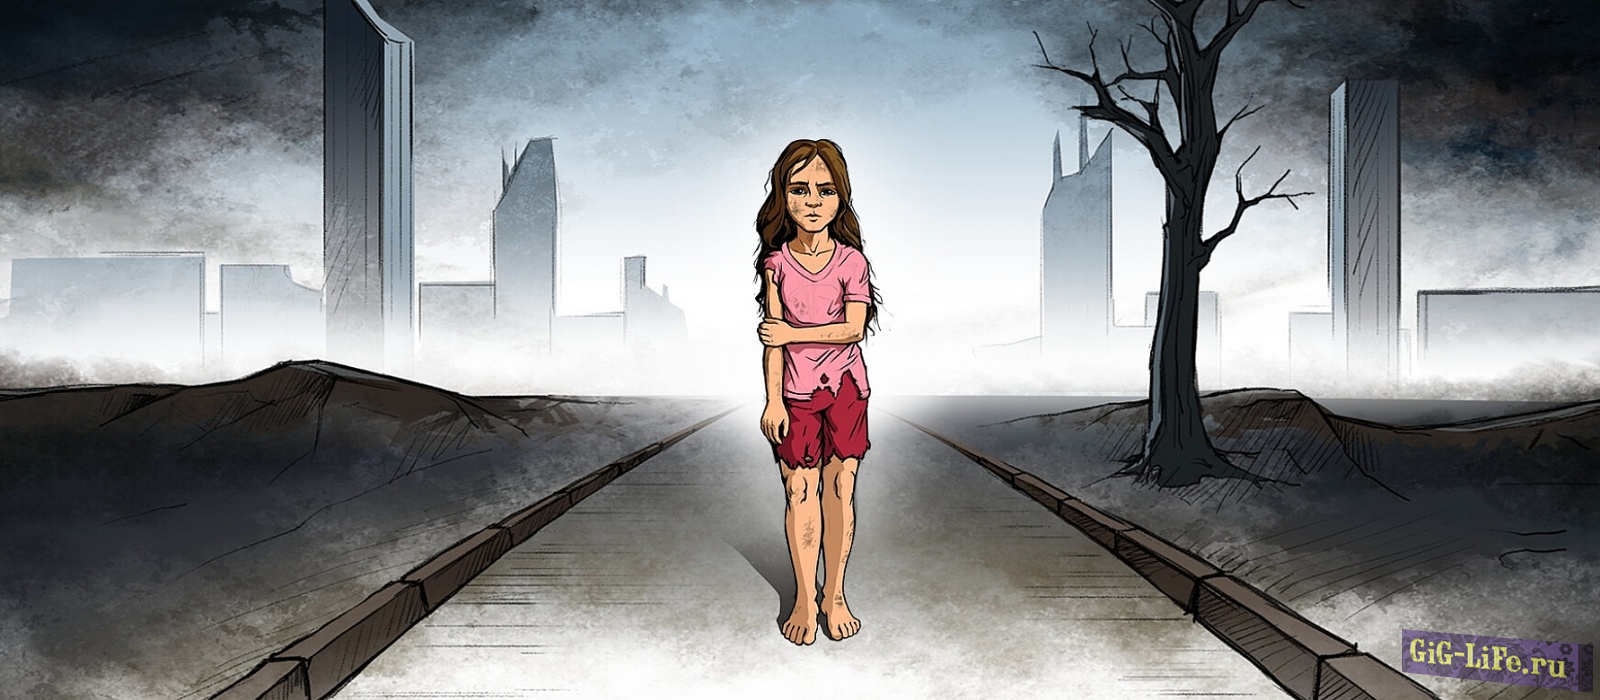 Халява — Игру про историю выживания Эшли раздают официально и бесплатно на PC